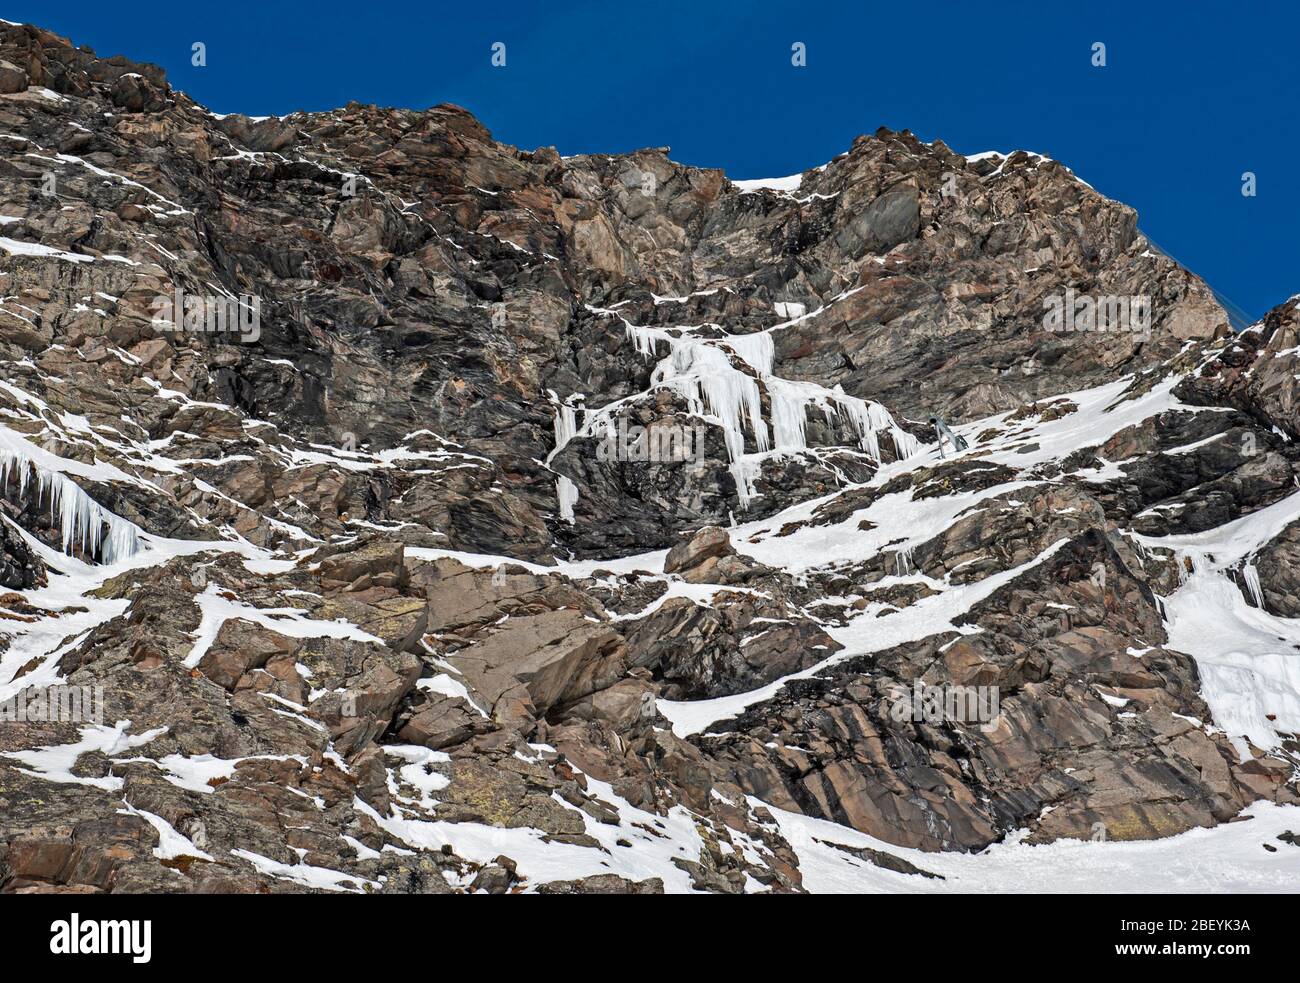 Zerklüftete alpine Felslandschaft mit gefrorenem Wasserfall, der mit Schnee und Eis bedeckt ist Stockfoto